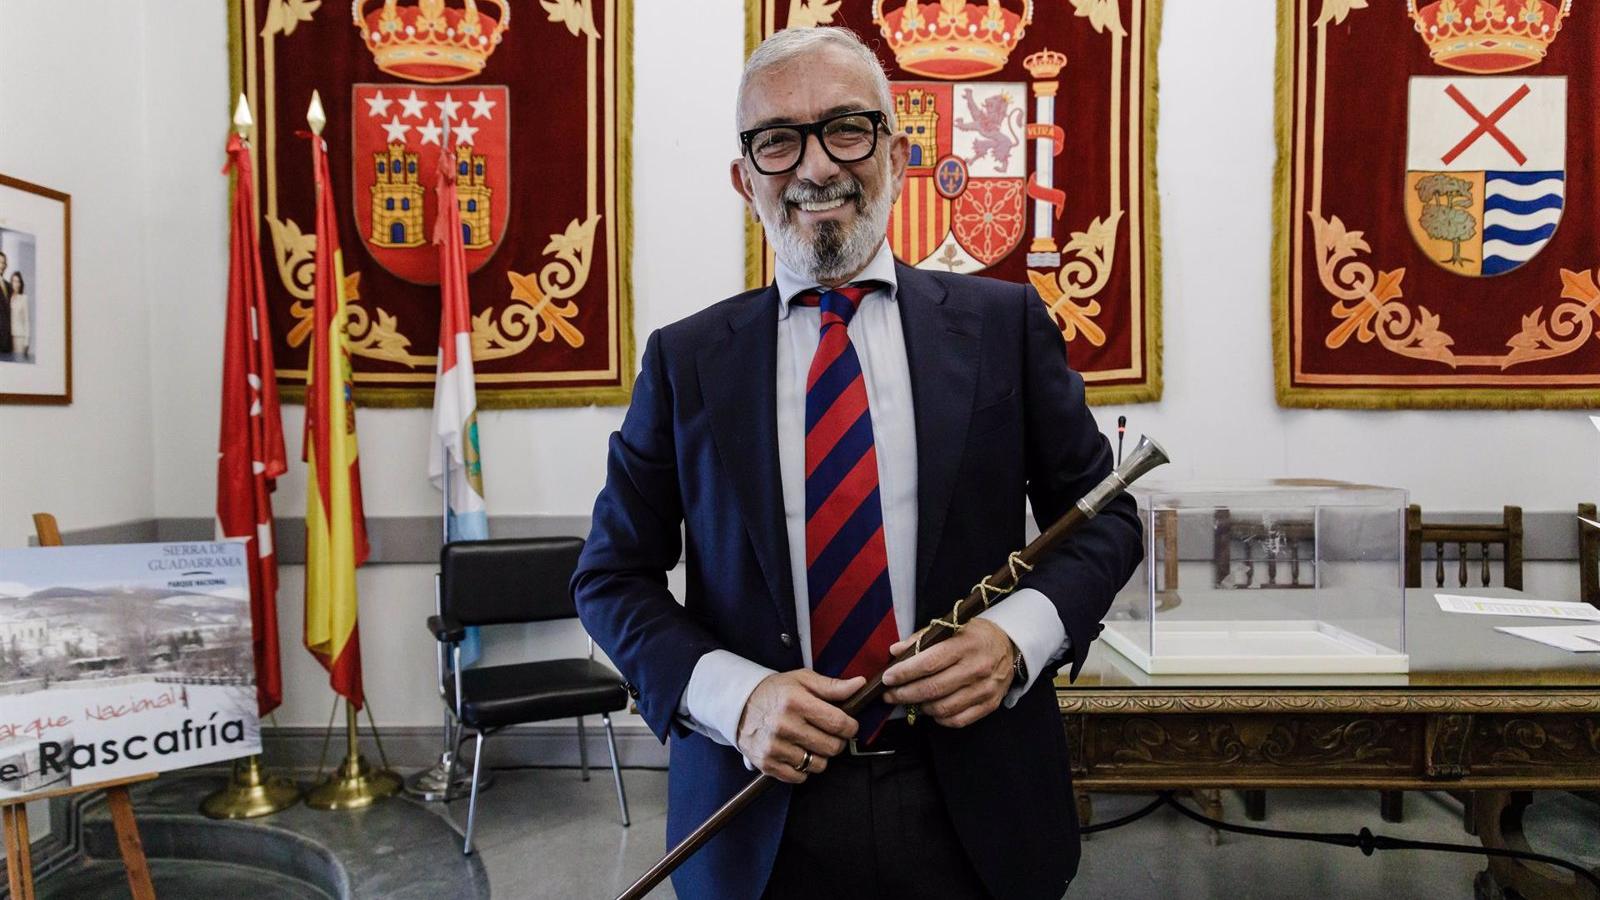 Óscar Robles recoge el bastón de mando en Rascafría, única Alcaldía de Vox en la región